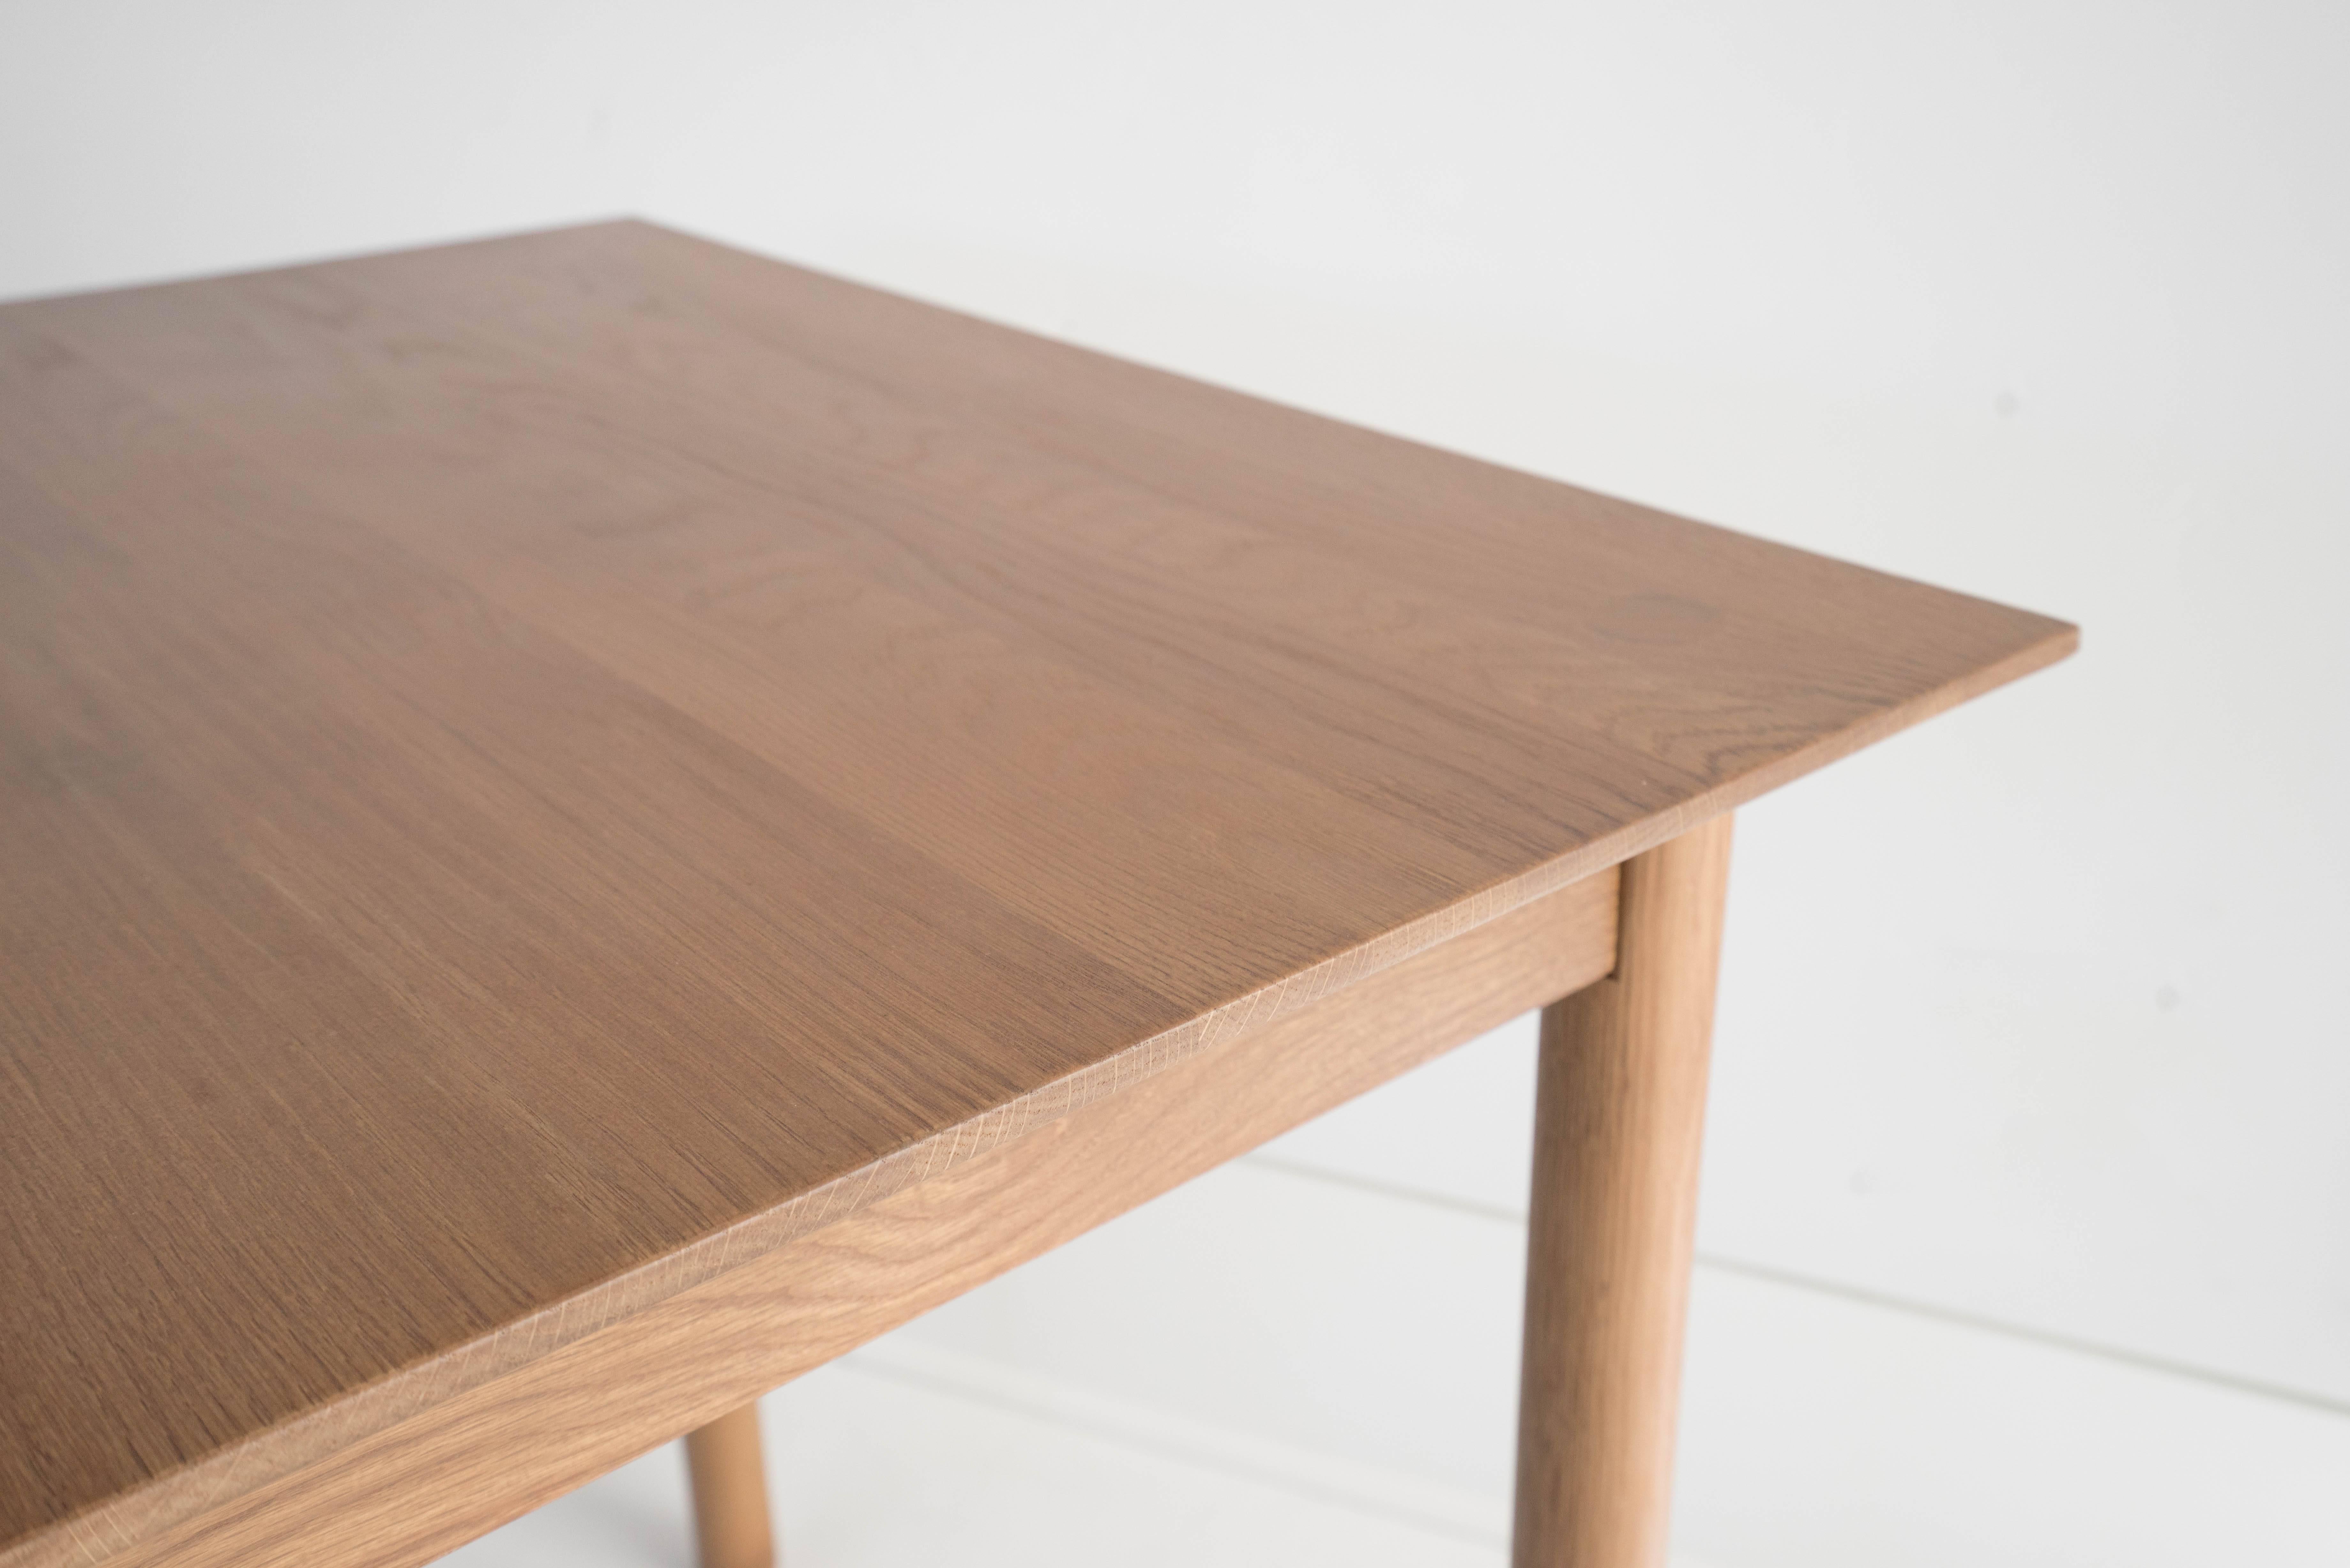 Sun at Six est un studio de design de meubles contemporains qui travaille avec des maîtres menuisiers chinois traditionnels pour fabriquer nos pièces à la main en utilisant la menuiserie traditionnelle. La table Can peut être utilisée comme bureau